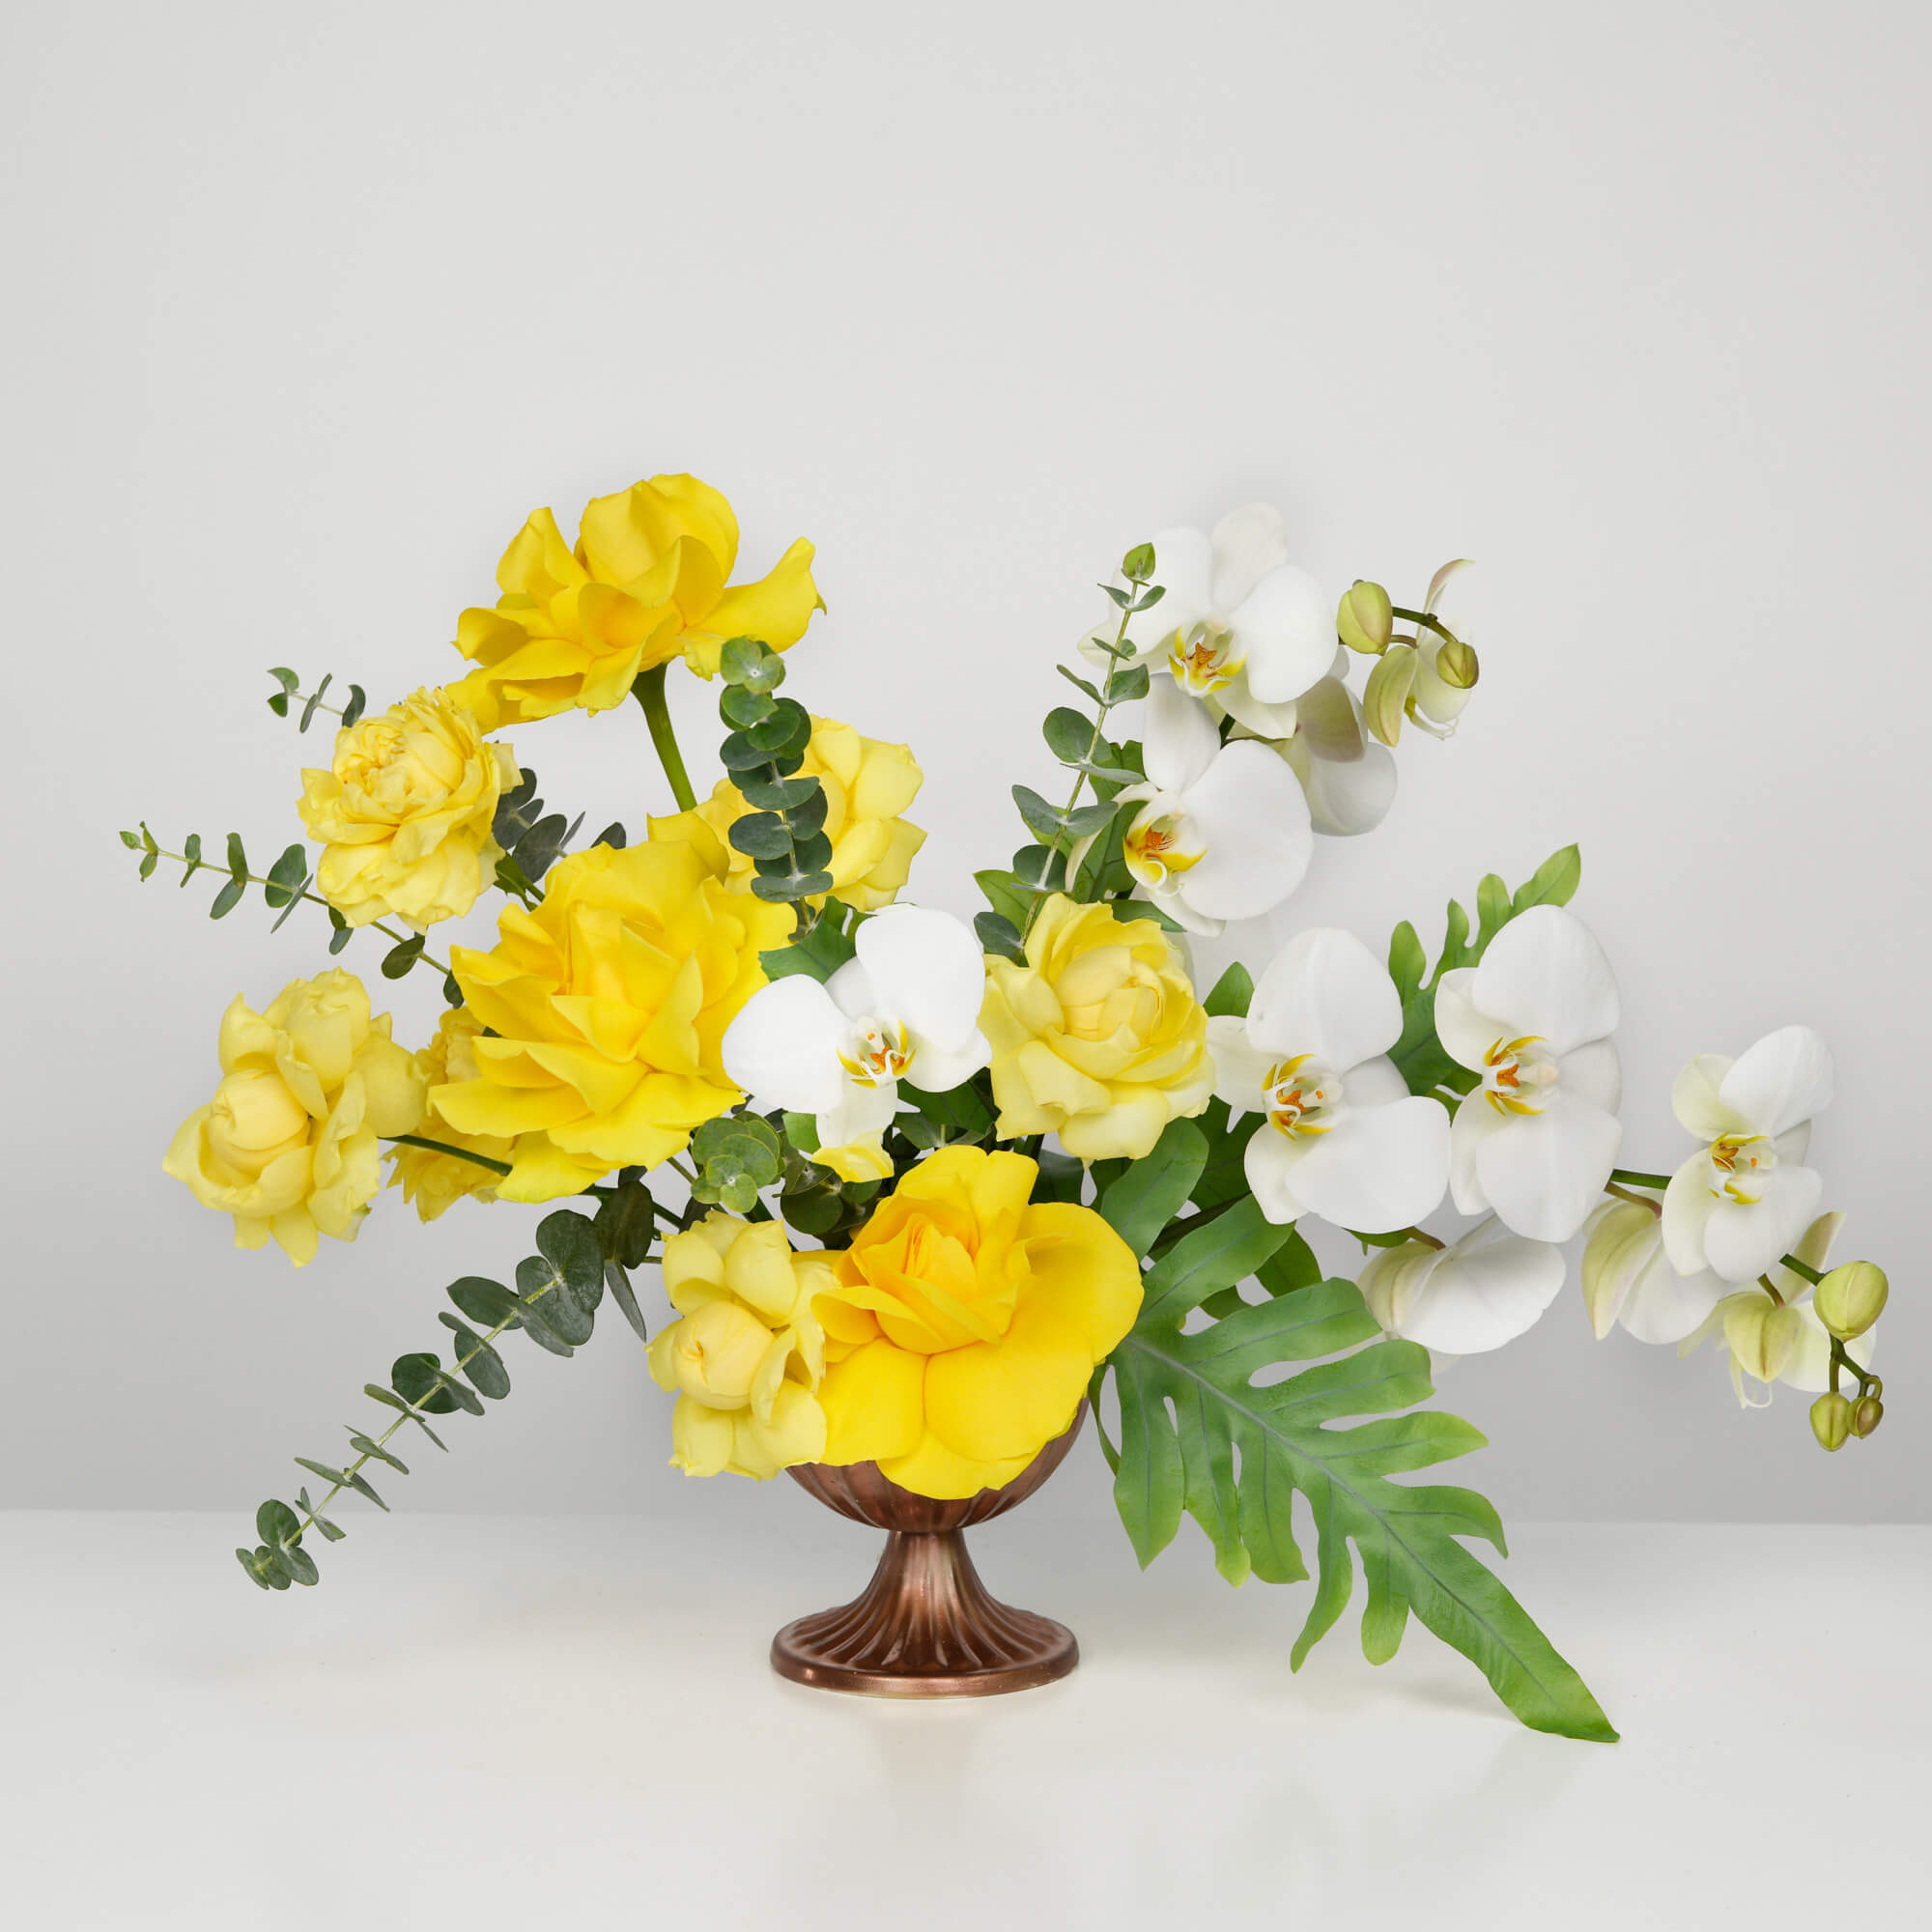 Aranjament floral cu trandafiri galbeni si phalaenopsis, 2